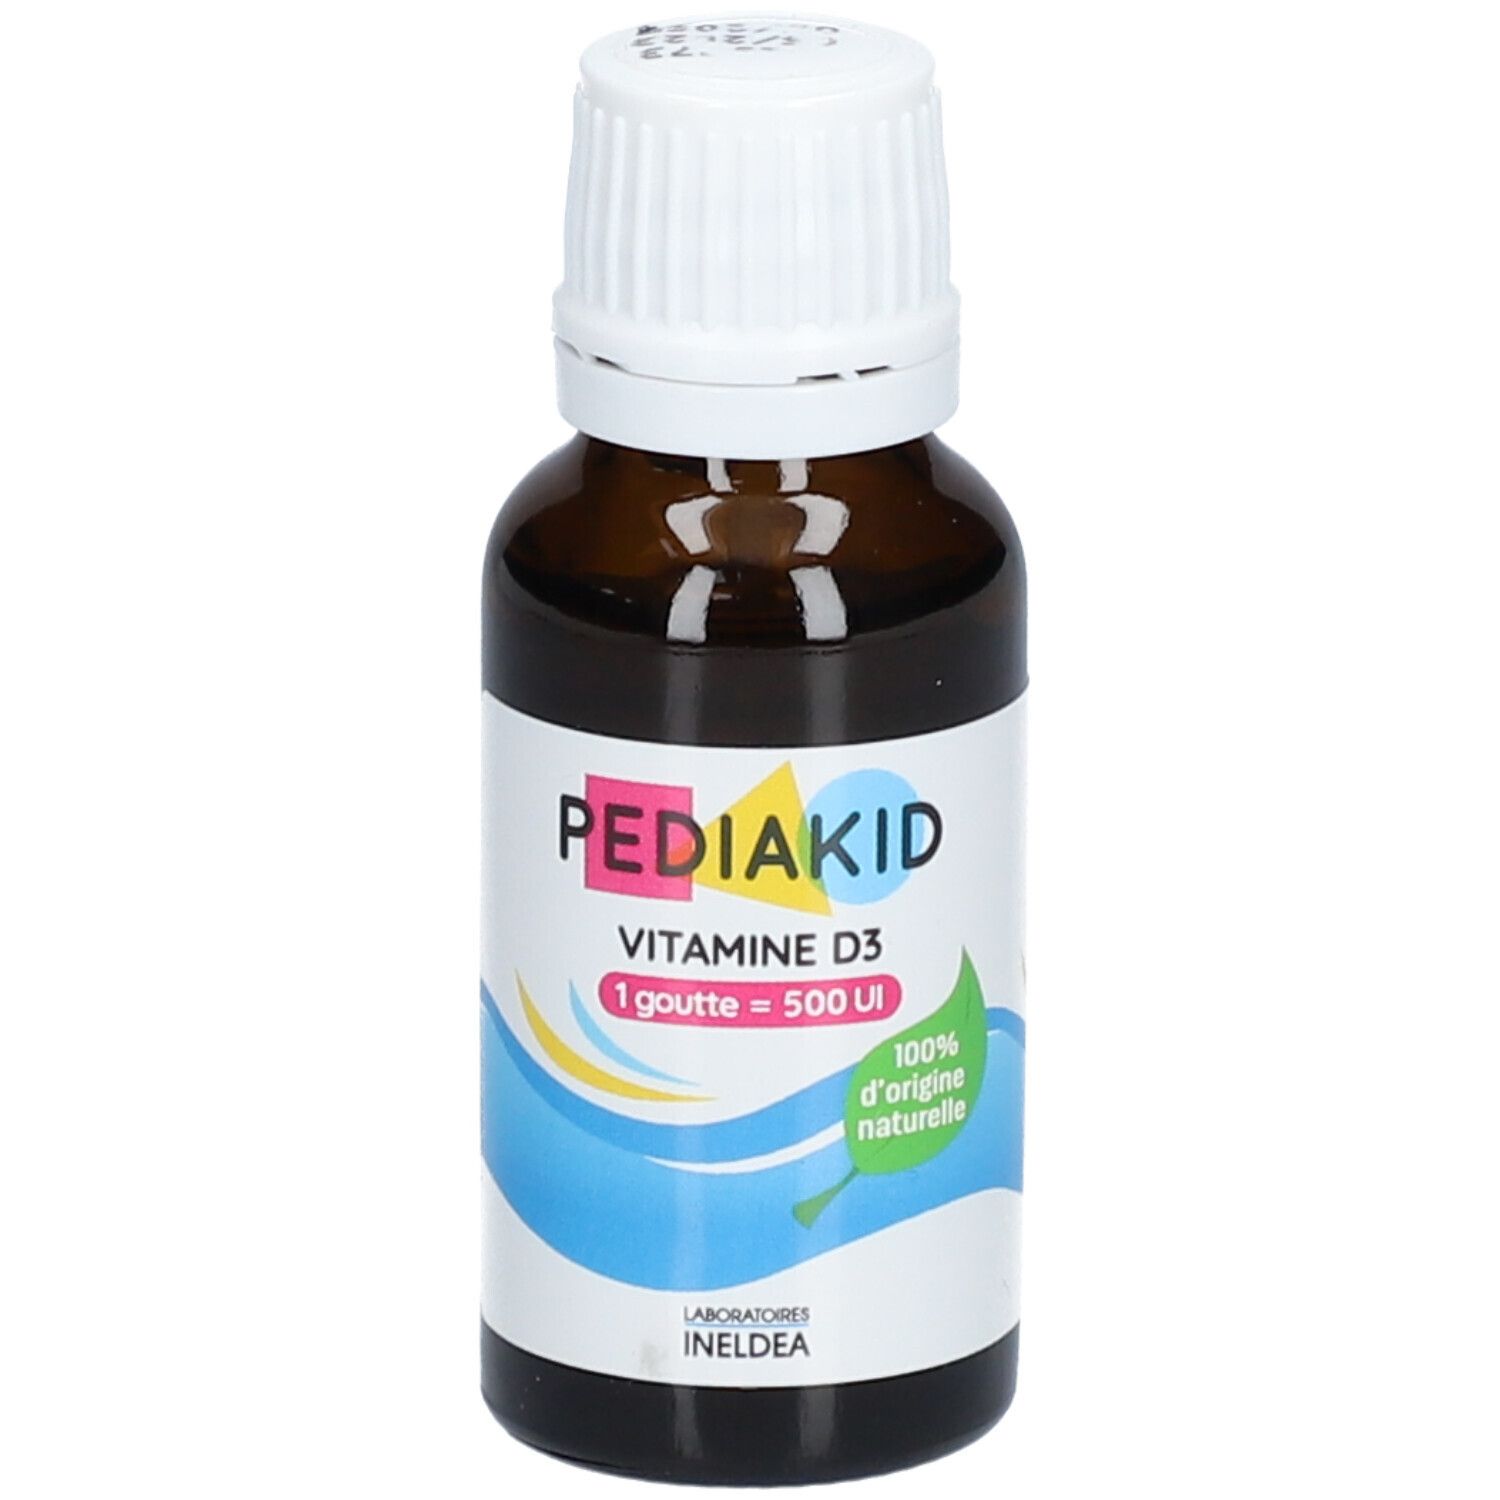 Image of PEDIAKID Vitamine D3